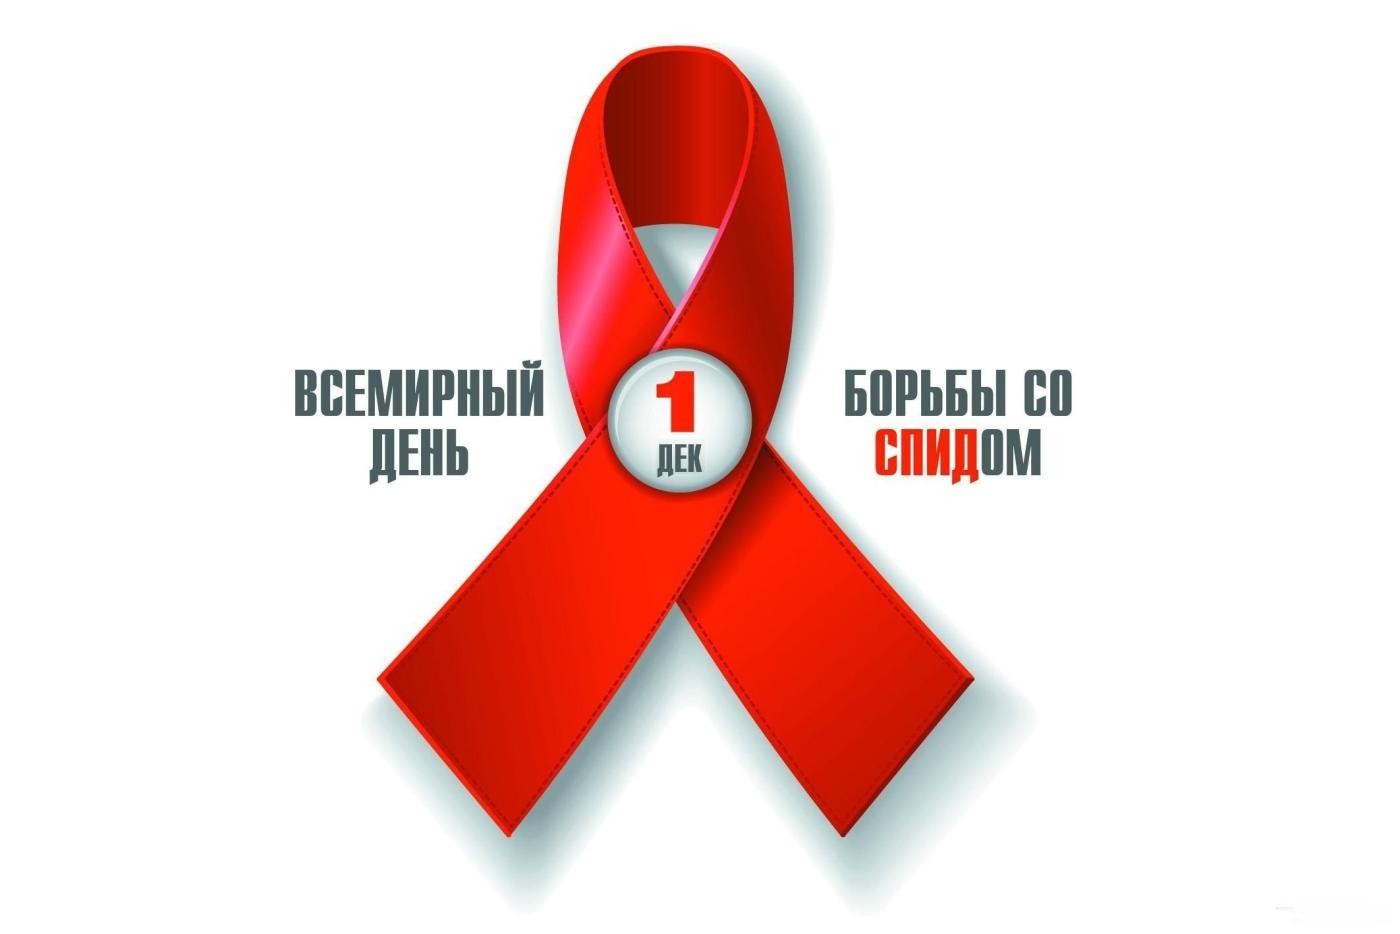 Со Всемирным денем борьбы со СПИДом!!!